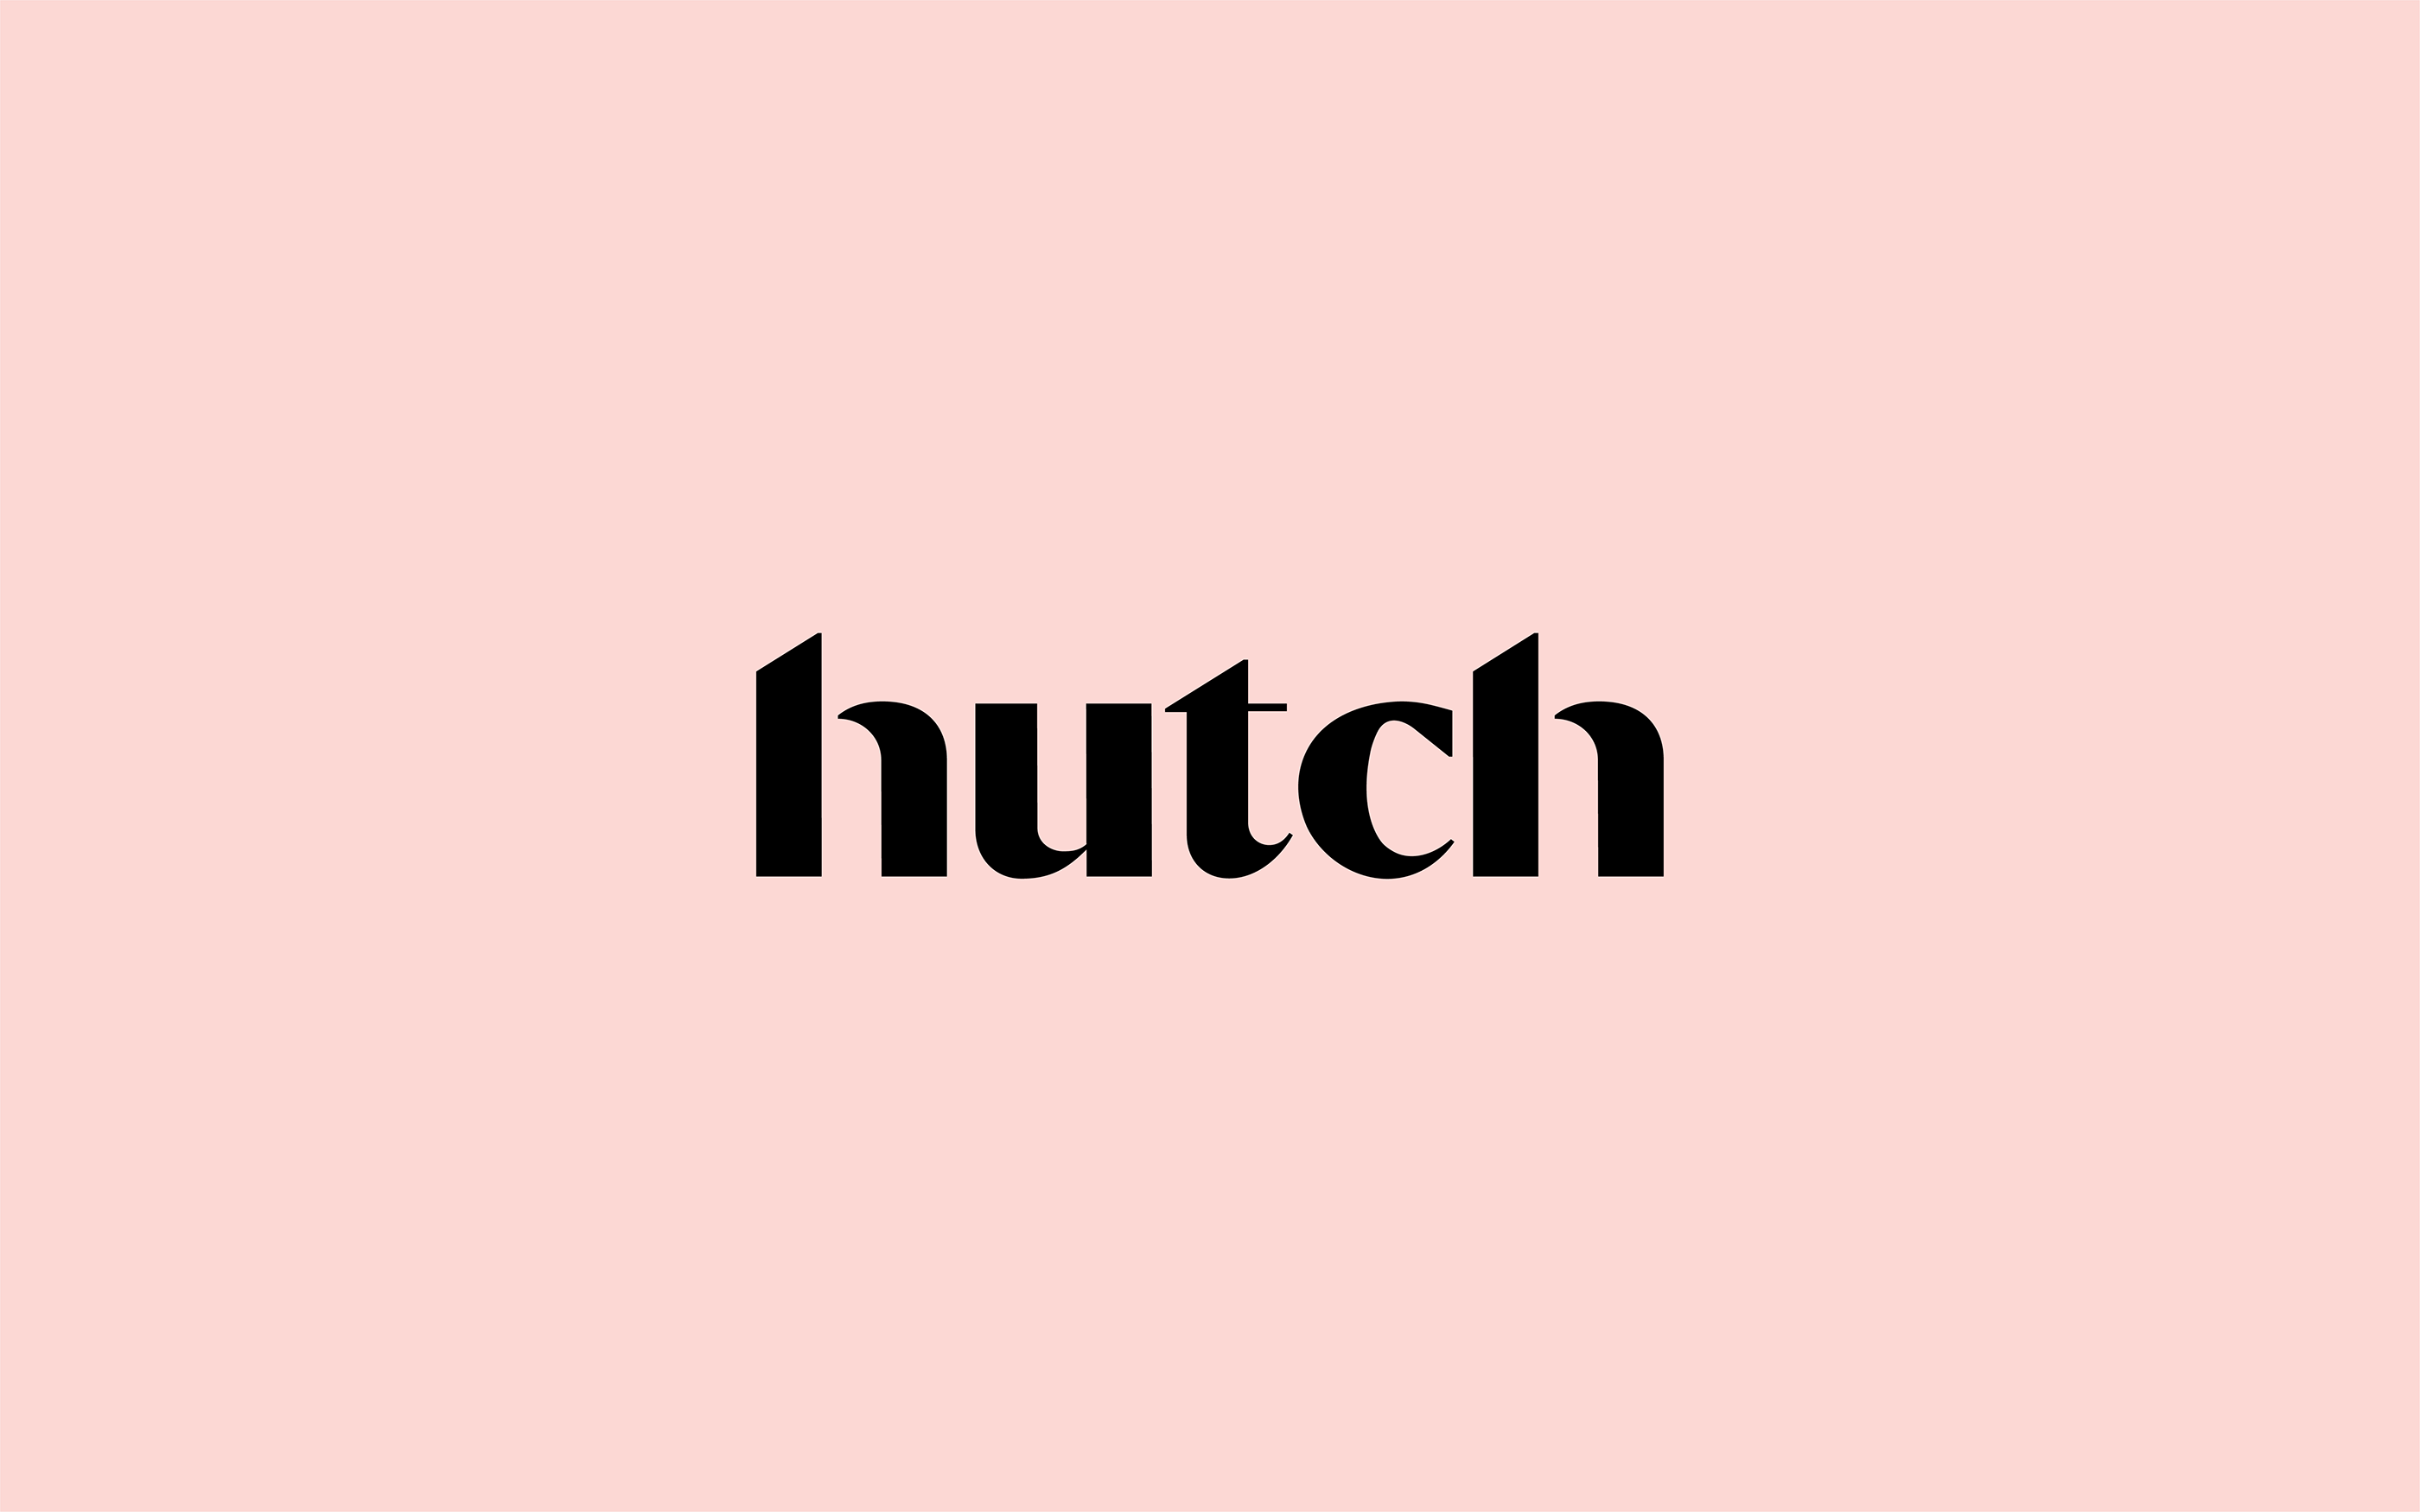 Hutch Interior Design App Brand Identity Design and Creative Direction